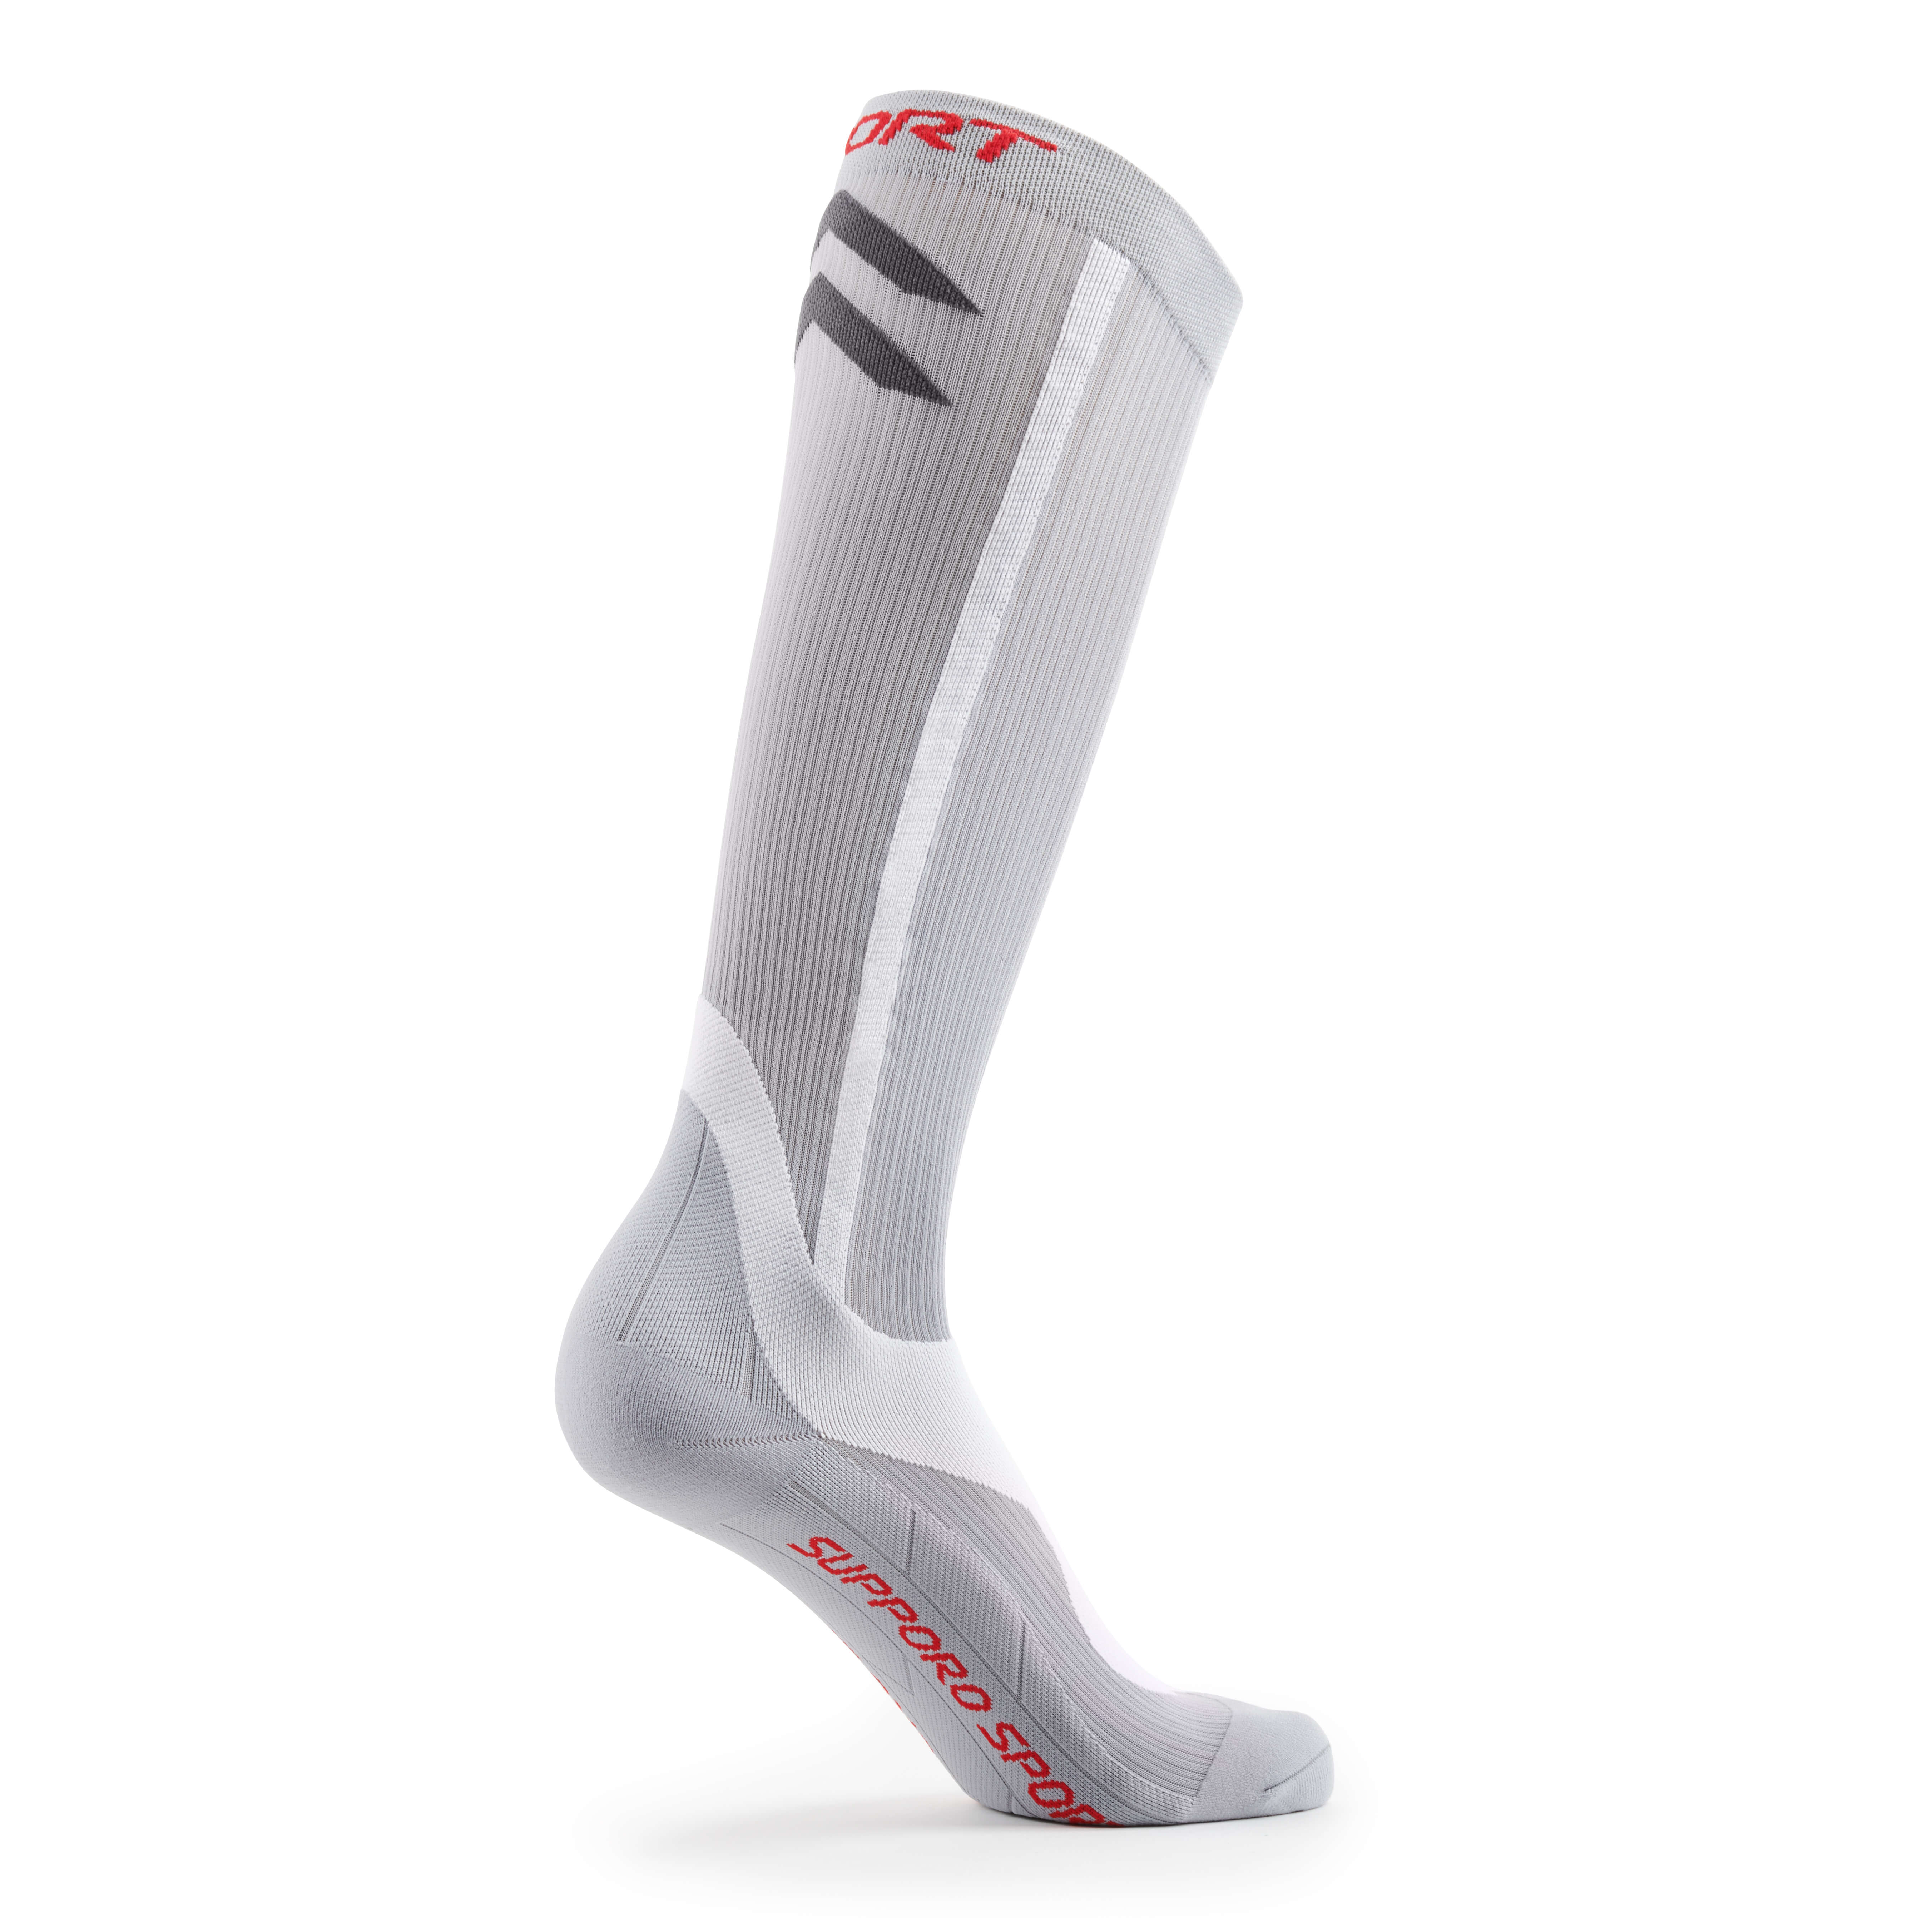 Unisex Sports Compression Socks - Supporo Compression